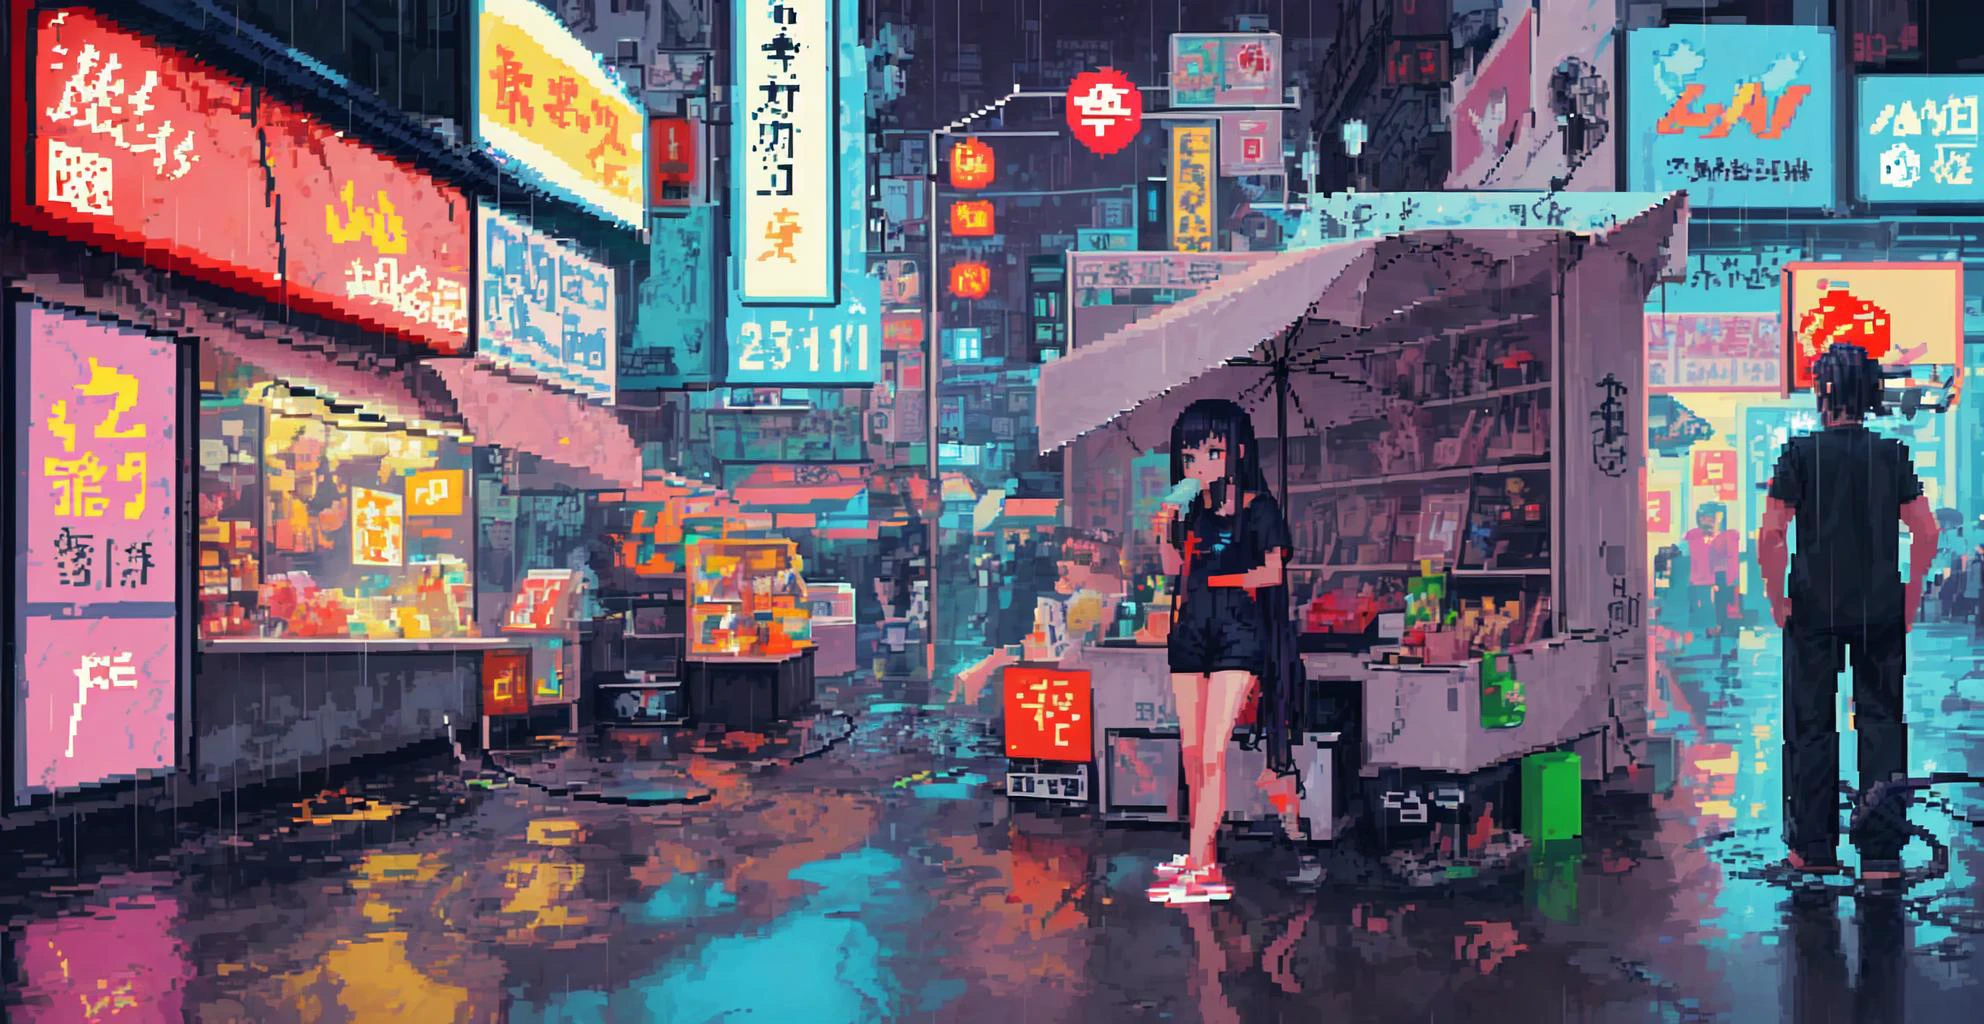 (arte de pixel_1.1)1 chica,Cabello muy largo,noche,calle,gatito,pequeño charco,lluvia,luz de neón,Hong Kong,ciberpunk,comiendo paletas heladas,Insertar bolsillo,Correa,Manga corta,blanco